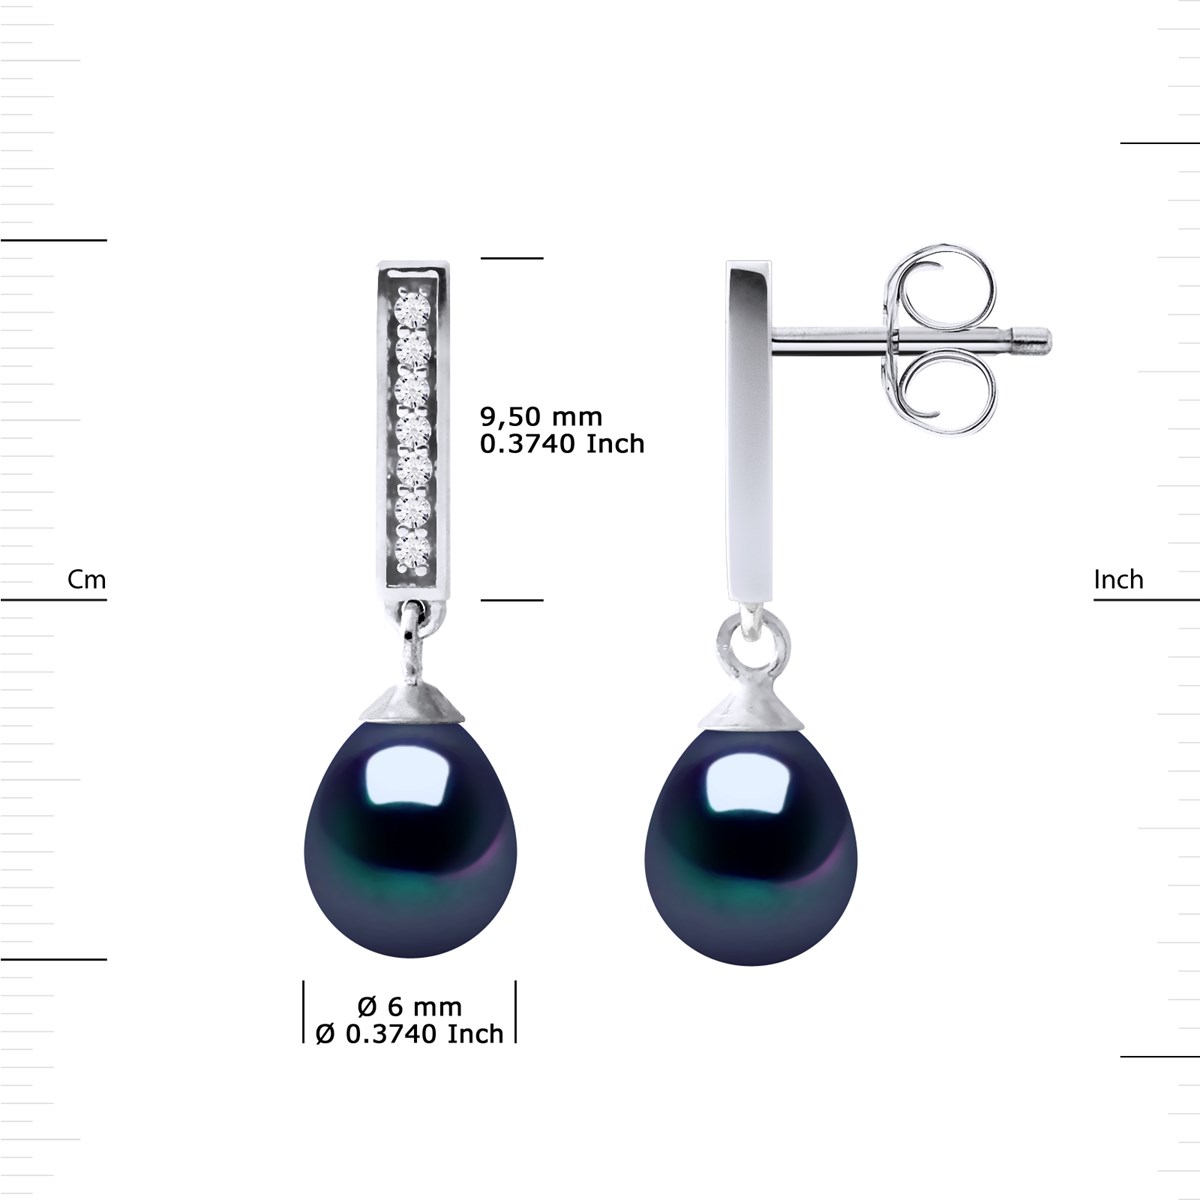 Boucles d'Oreilles Joailerie Perles d'Eau Douce Noires Poires 6-7 mm Argent 925 - vue 3